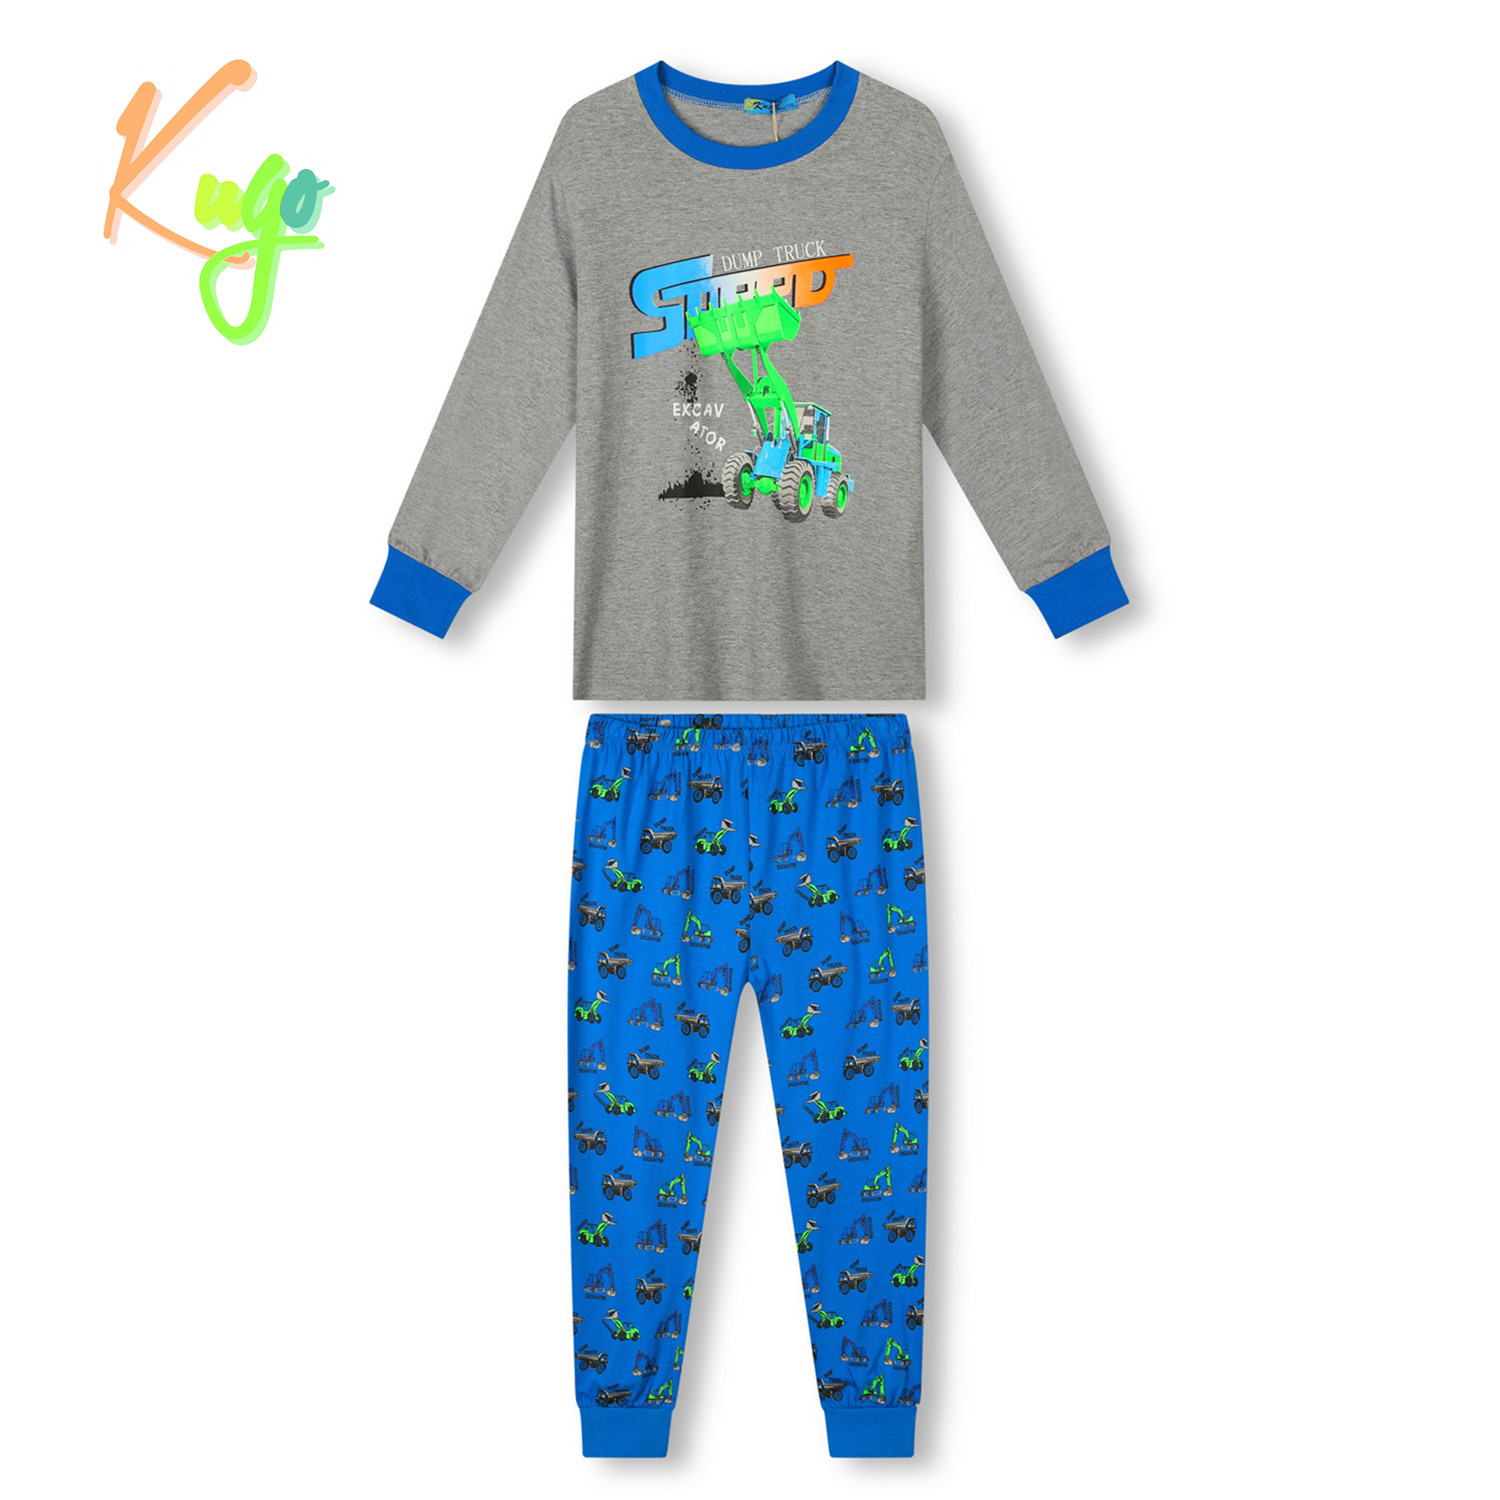 Chlapecké pyžamo - KUGO MP3778, šedá / modrá Barva: Šedá, Velikost: 110